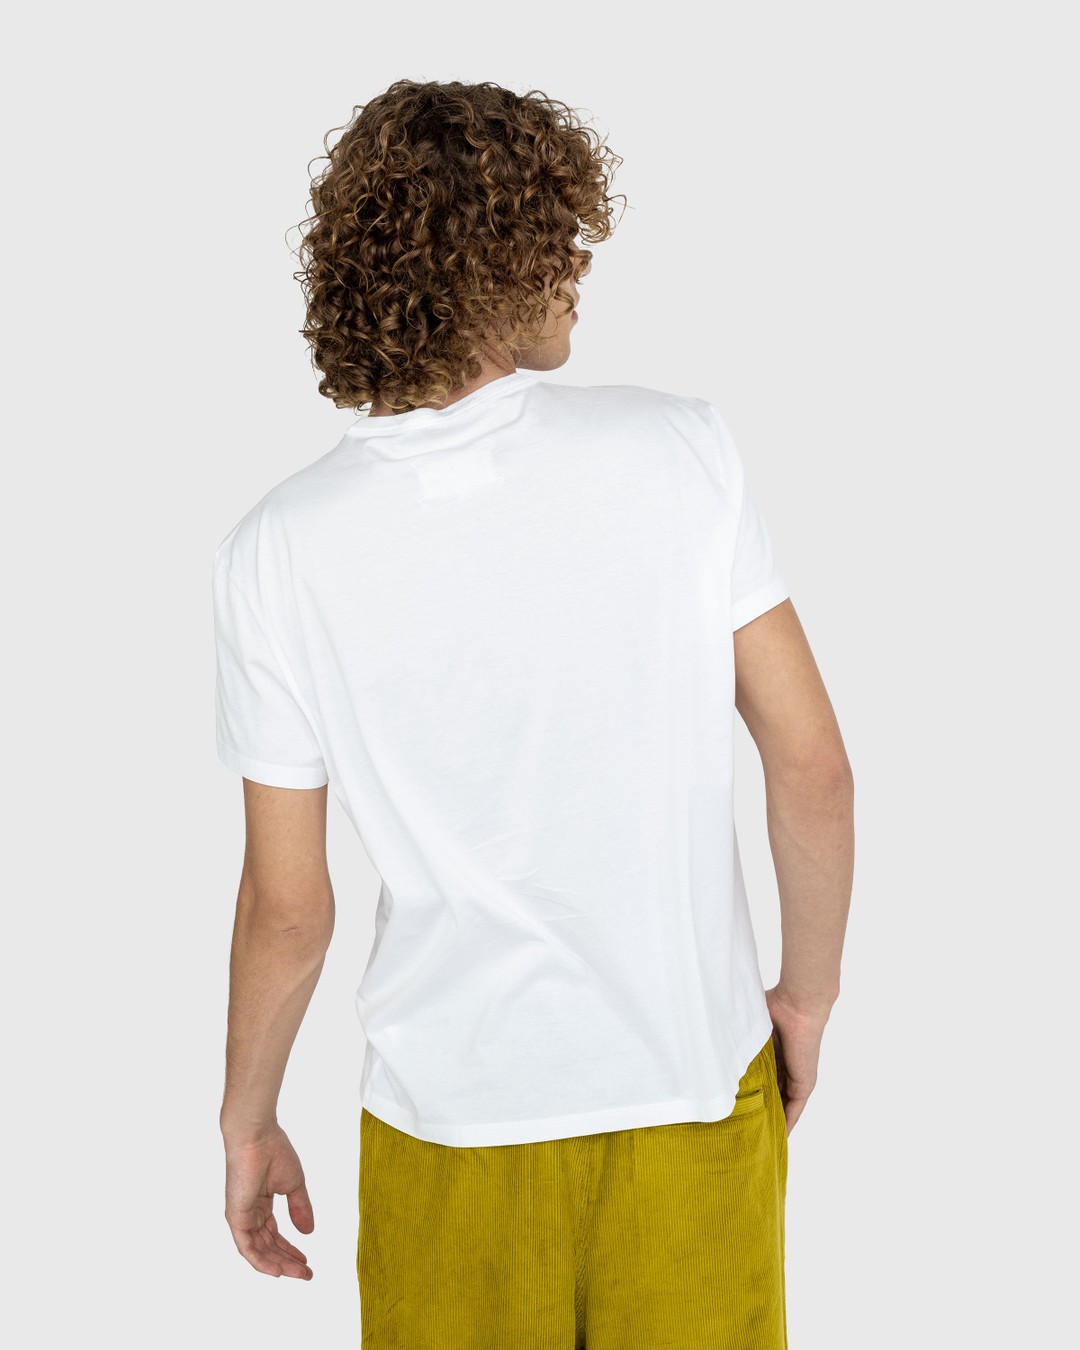 Maison Margiela – Logo T-Shirt White - T-shirts - White - Image 3